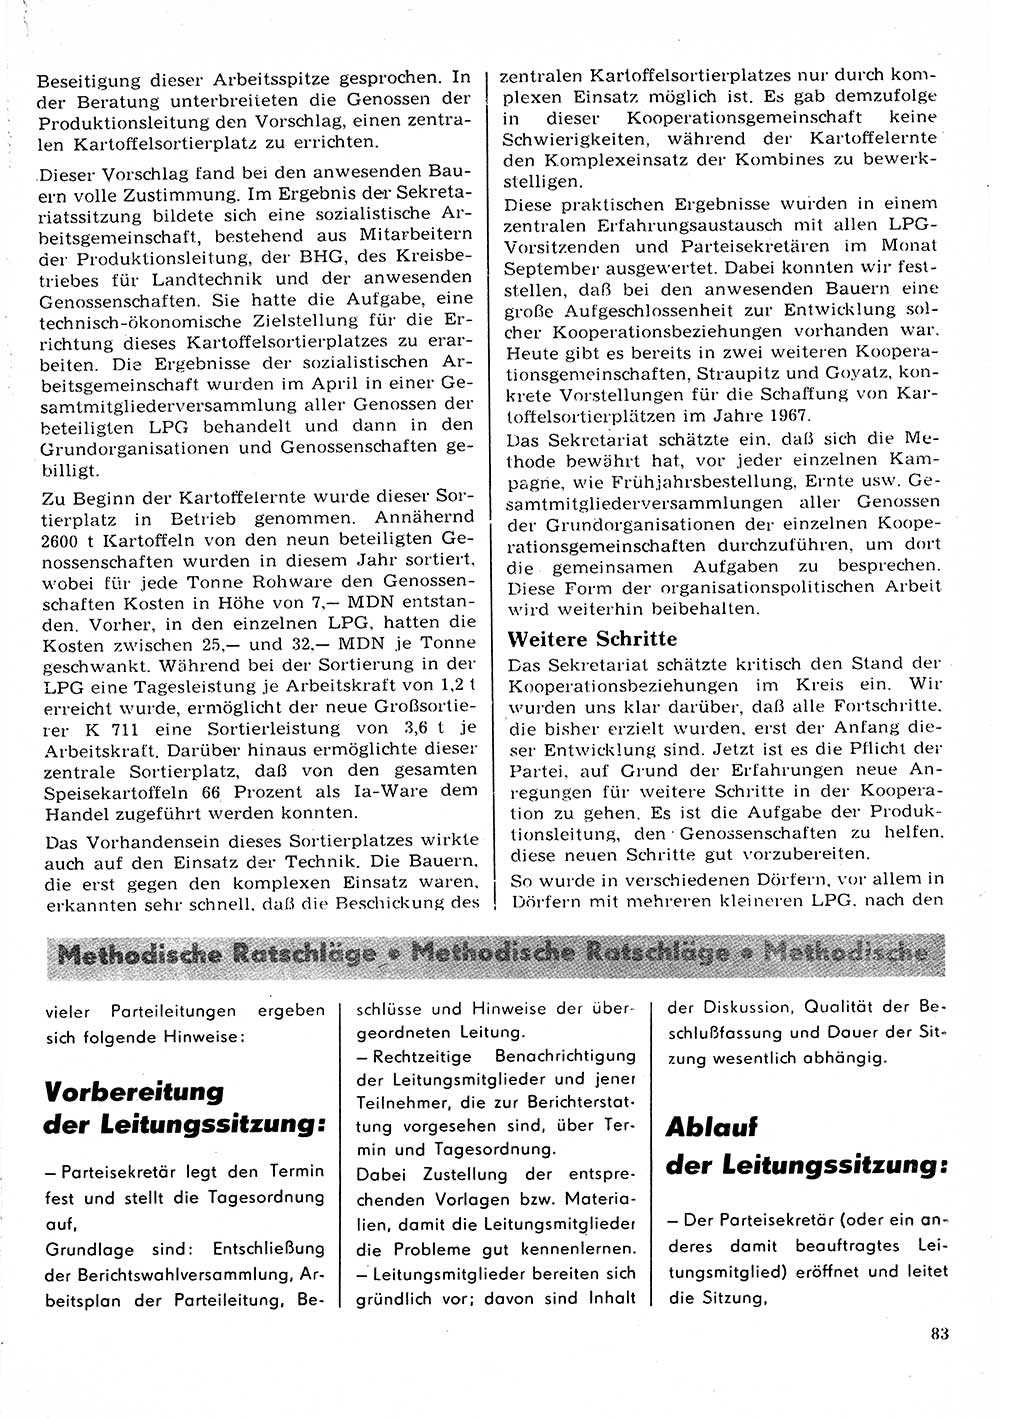 Neuer Weg (NW), Organ des Zentralkomitees (ZK) der SED (Sozialistische Einheitspartei Deutschlands) für Fragen des Parteilebens, 22. Jahrgang [Deutsche Demokratische Republik (DDR)] 1967, Seite 83 (NW ZK SED DDR 1967, S. 83)